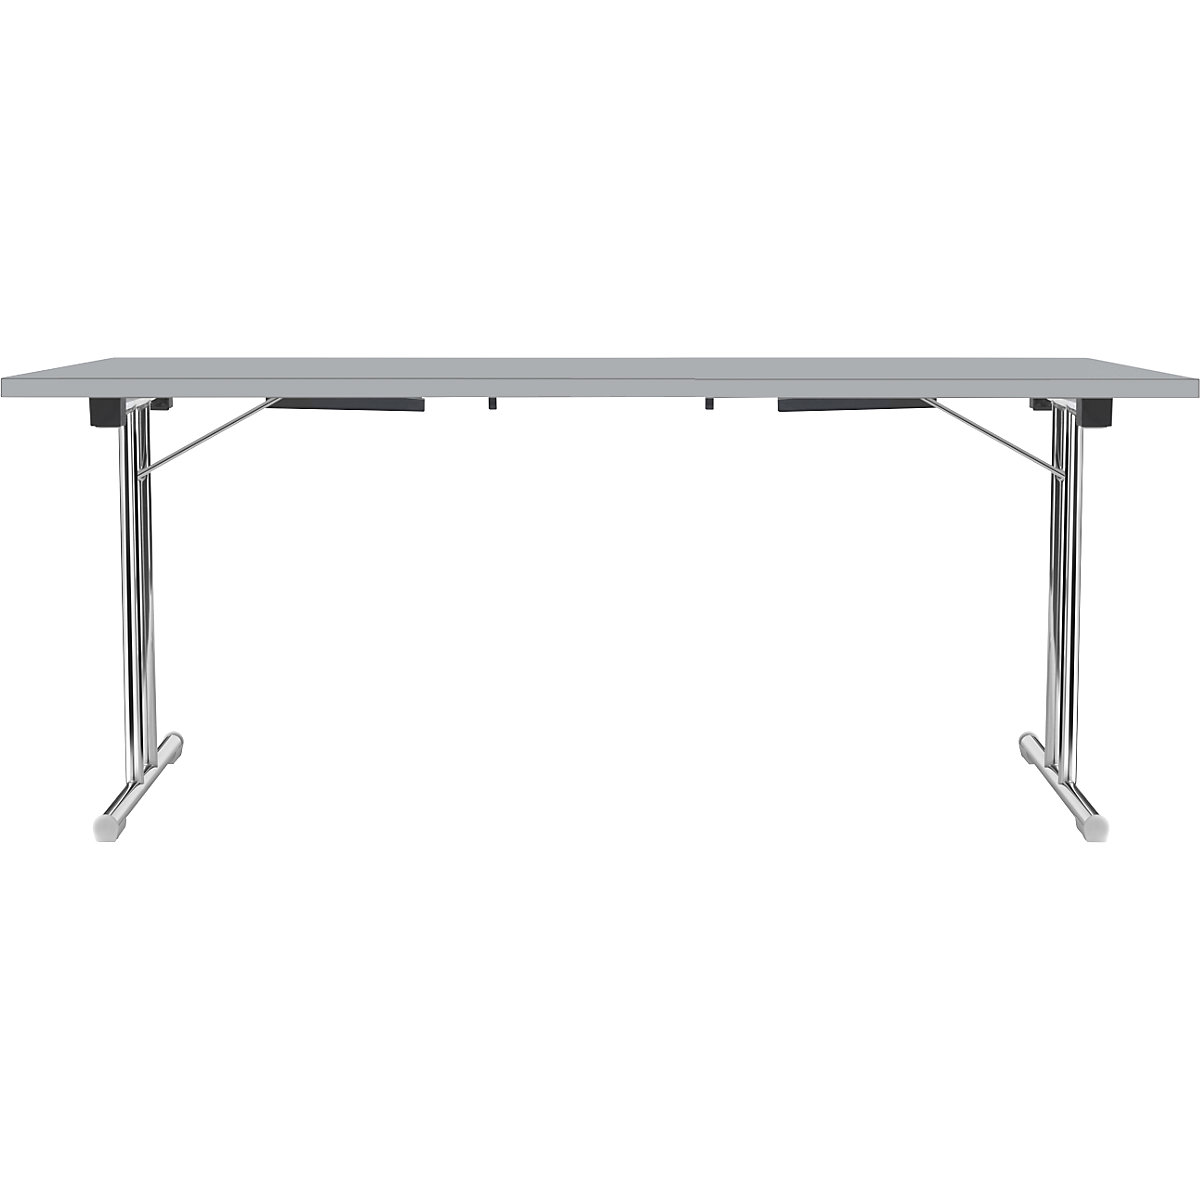 Inklapbare tafel met dubbel T-vormig onderstel, frame van staalbuis, verchroomd, lichtgrijs/lichtgrijs, b x d = 1800 x 800 mm-7